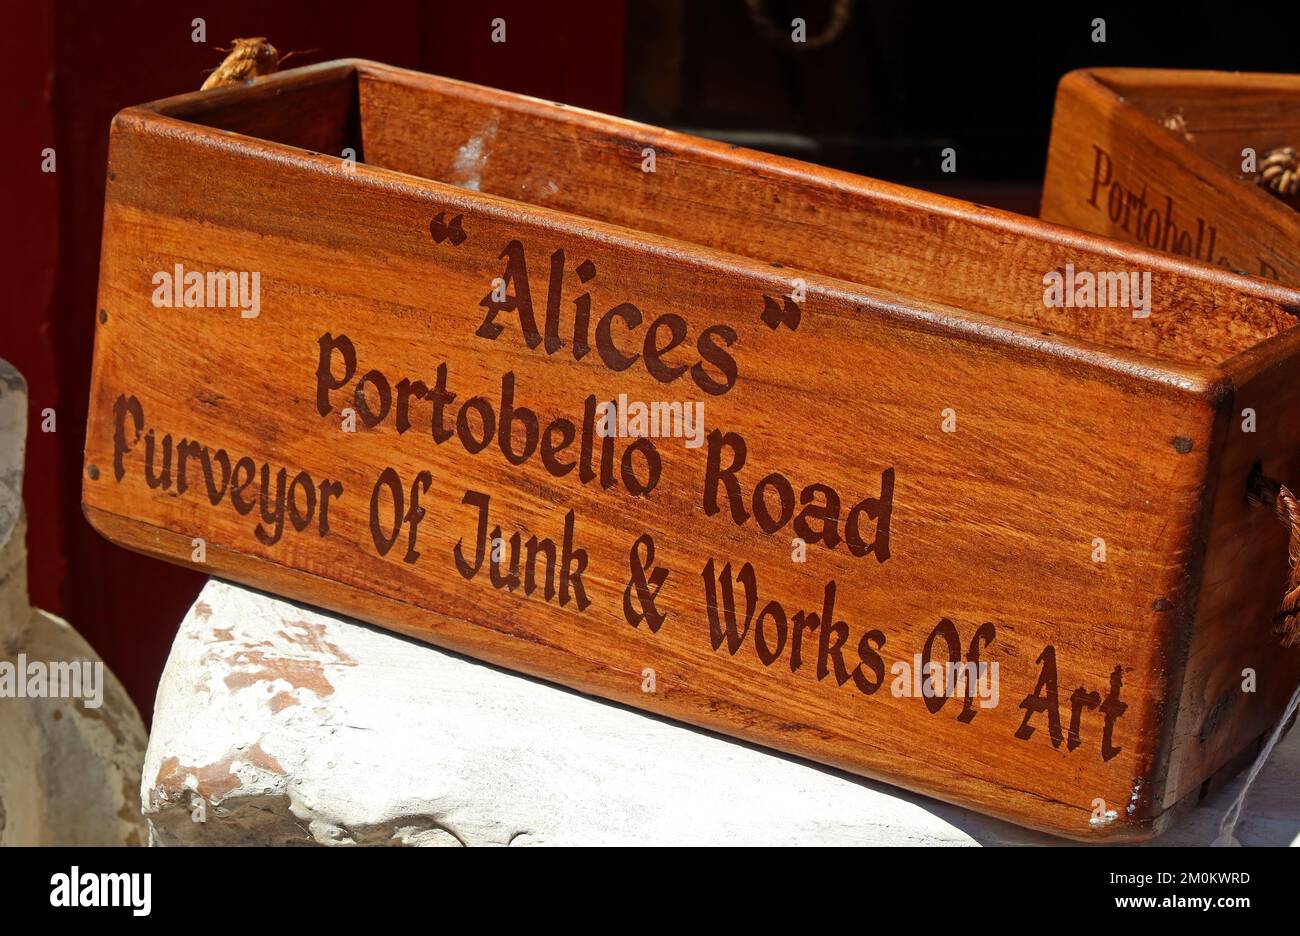 Alices, Portobello Road, pourvoyeur de Junk & Works of Art, 86 Portobello Rd, Londres W11 2QD Banque D'Images